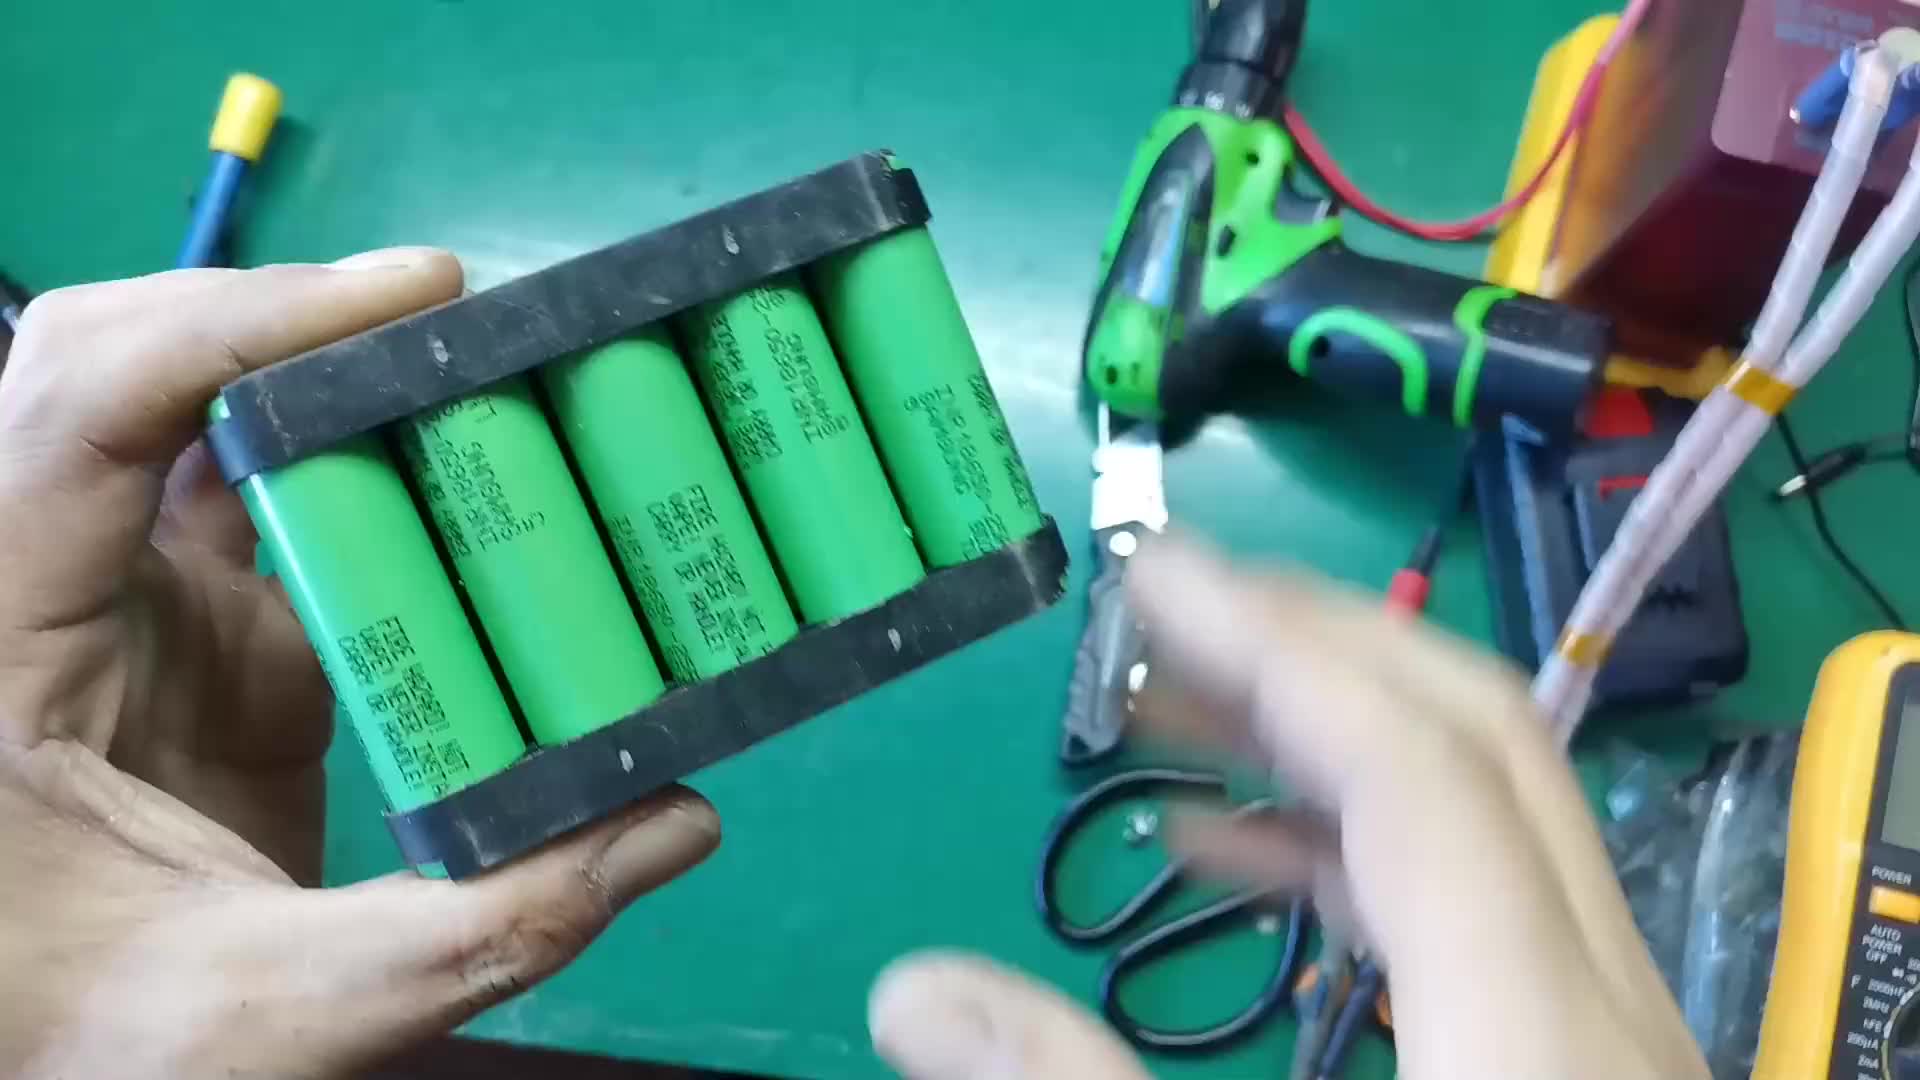 #硬声创作季 锂电池角磨机5安时容量的电池能切多少段25毫米的螺纹钢呢？ #转自网络侵删！ 